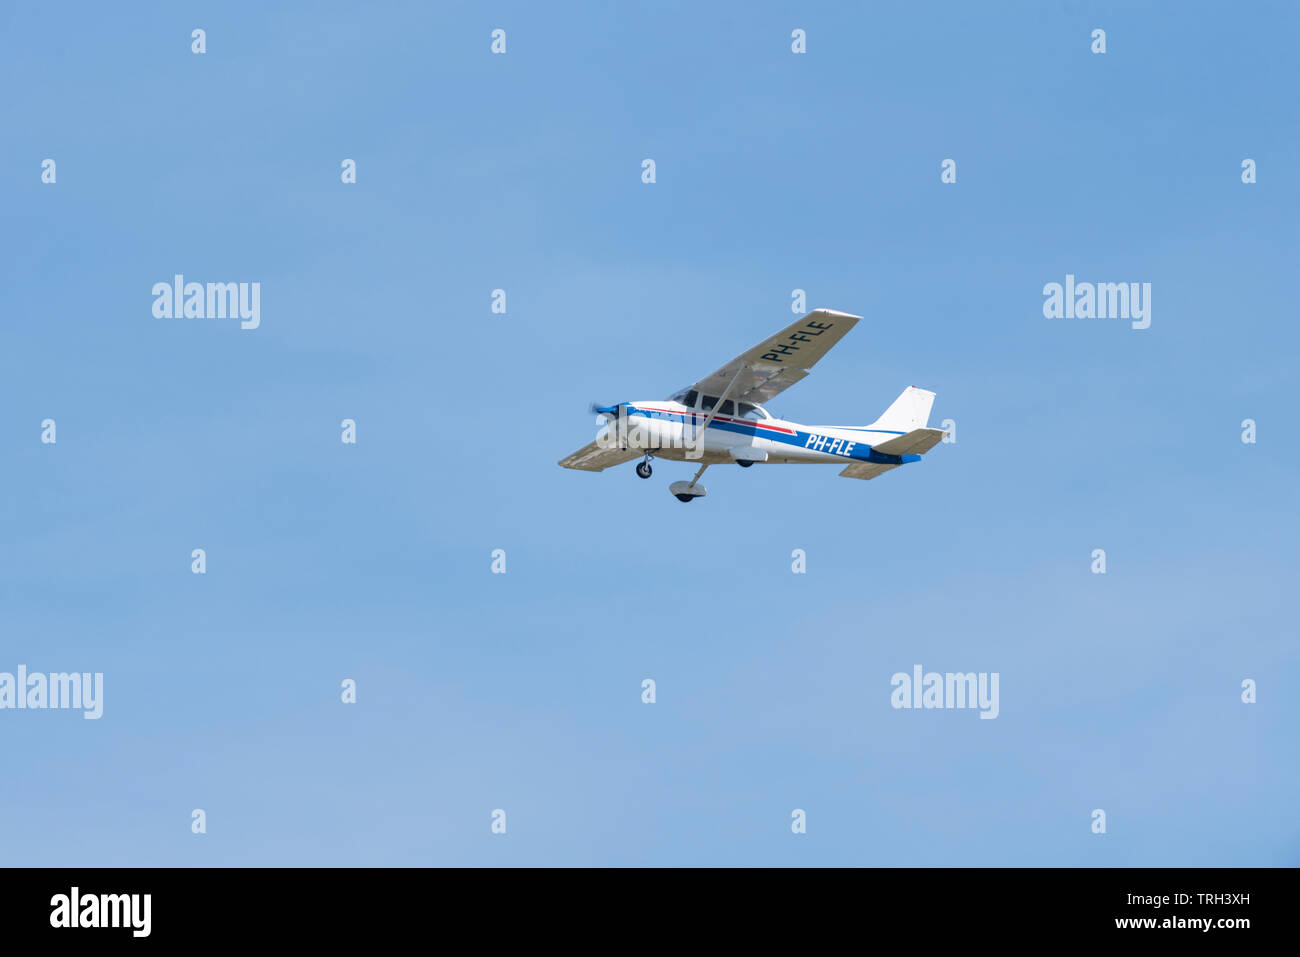 Avion léger Cessna F172N Skyhawk C172 pH-FLE de Reims volant dans un ciel bleu au-dessus de l'aéroport de Southend, Essex, Royaume-Uni Banque D'Images